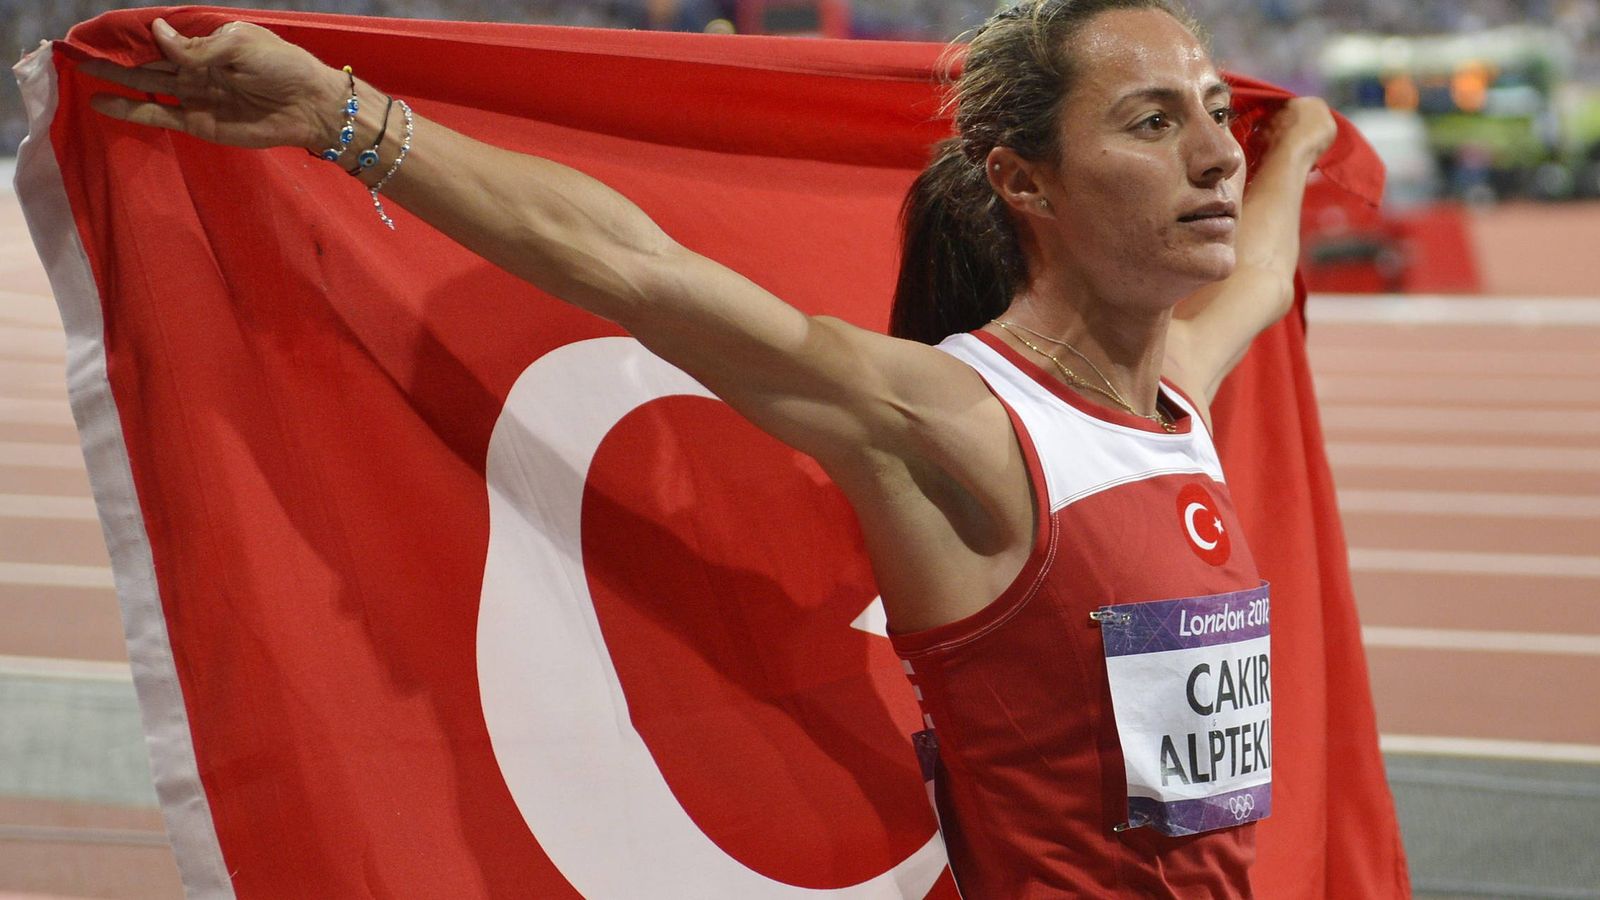 Foto: Asli Cakir Alptekin celebra su medalla de oro en los 1.500 metros de los Juegos Olímpicos de Londres 2012.